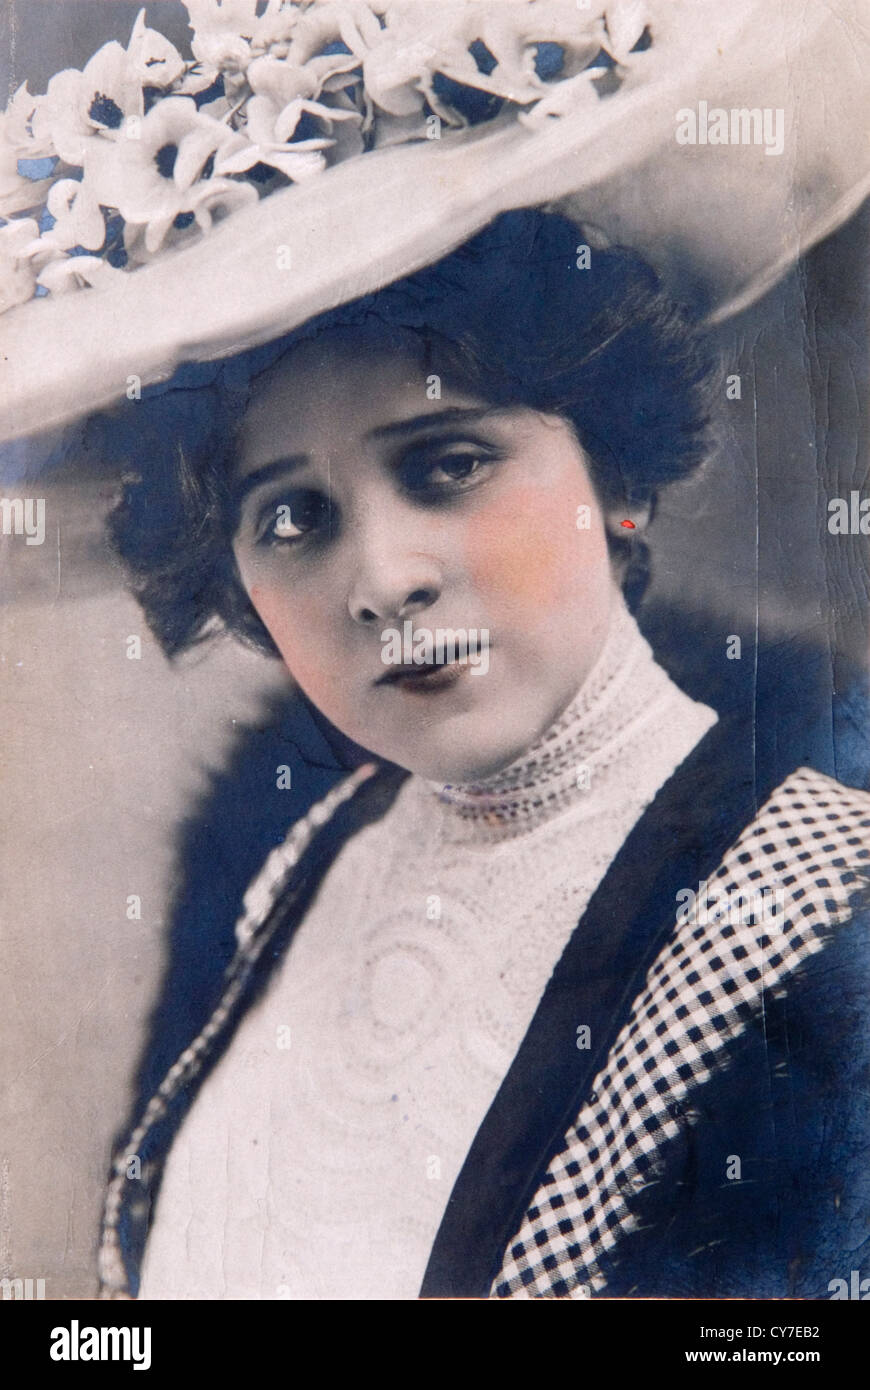 Edna kann Pettie (2. September 1878 – 1. Januar 1948), bekannt auf der Bühne als Edna May, war eine US-amerikanische Schauspielerin und Sängerin. Stockfoto